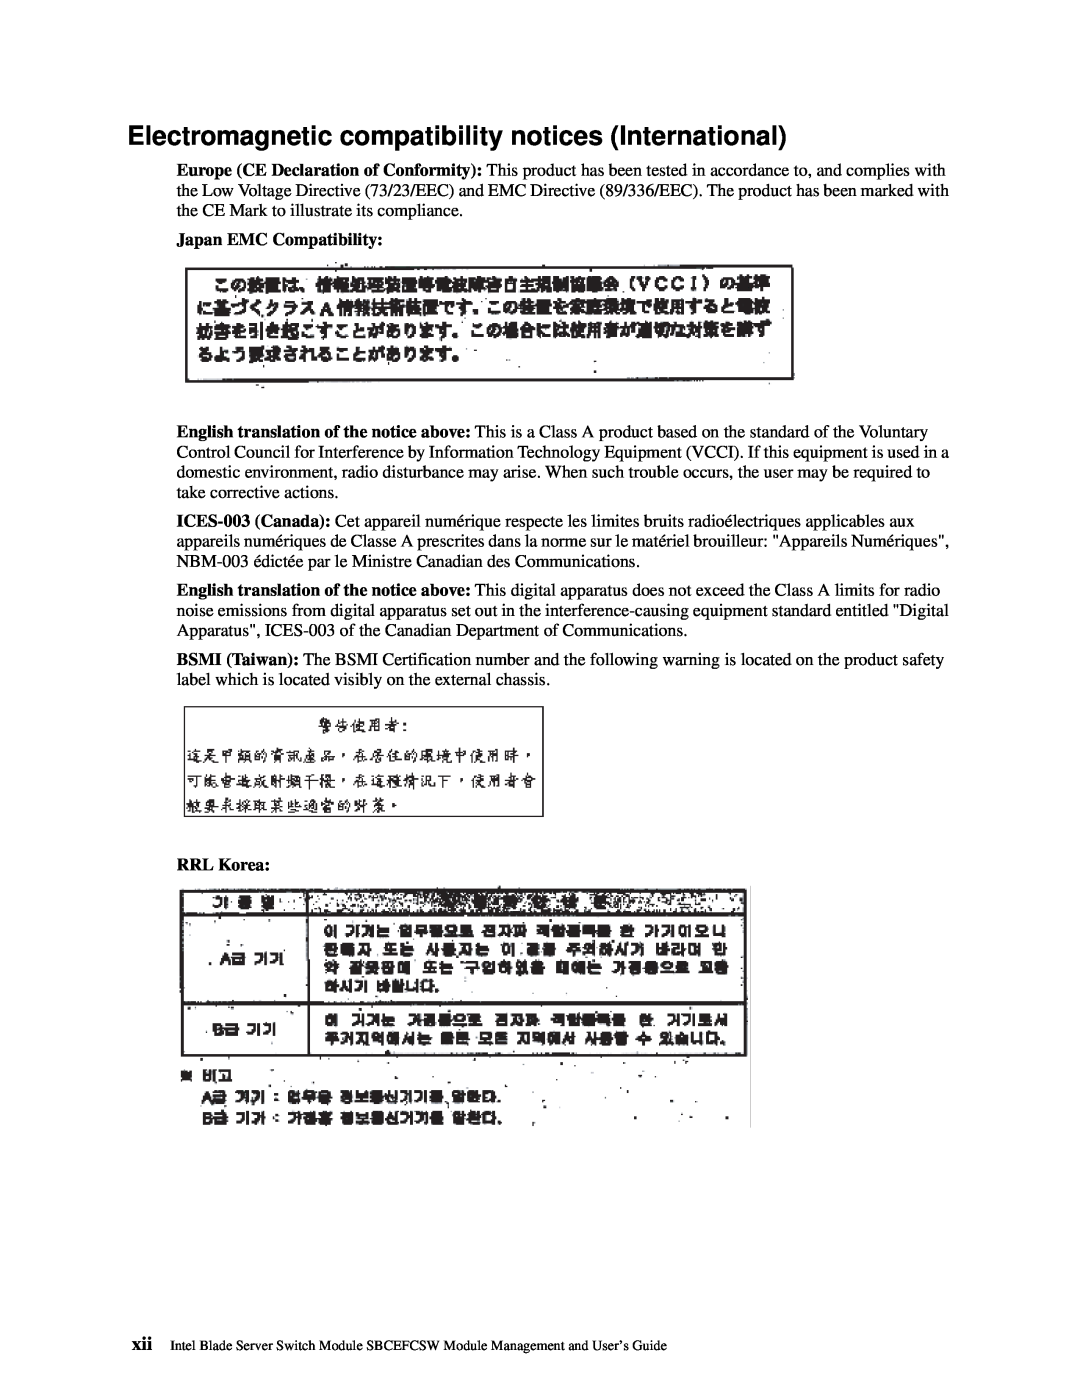 Intel SBCEFCSW manual Japan EMC Compatibility, RRL Korea 